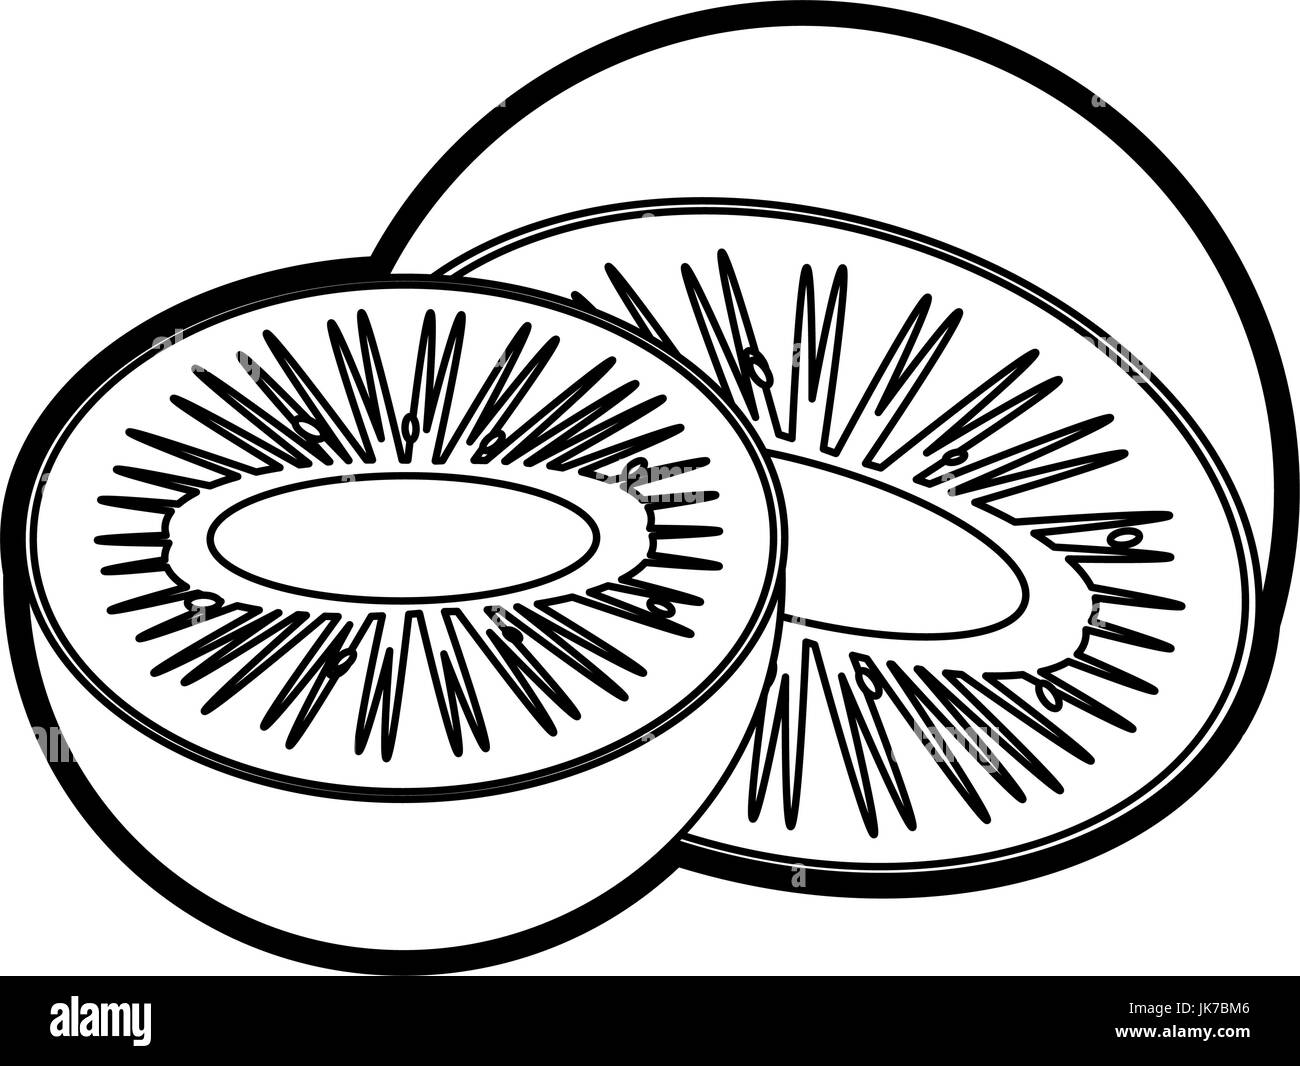 Kiwi design Imágenes de stock en blanco y negro - Alamy